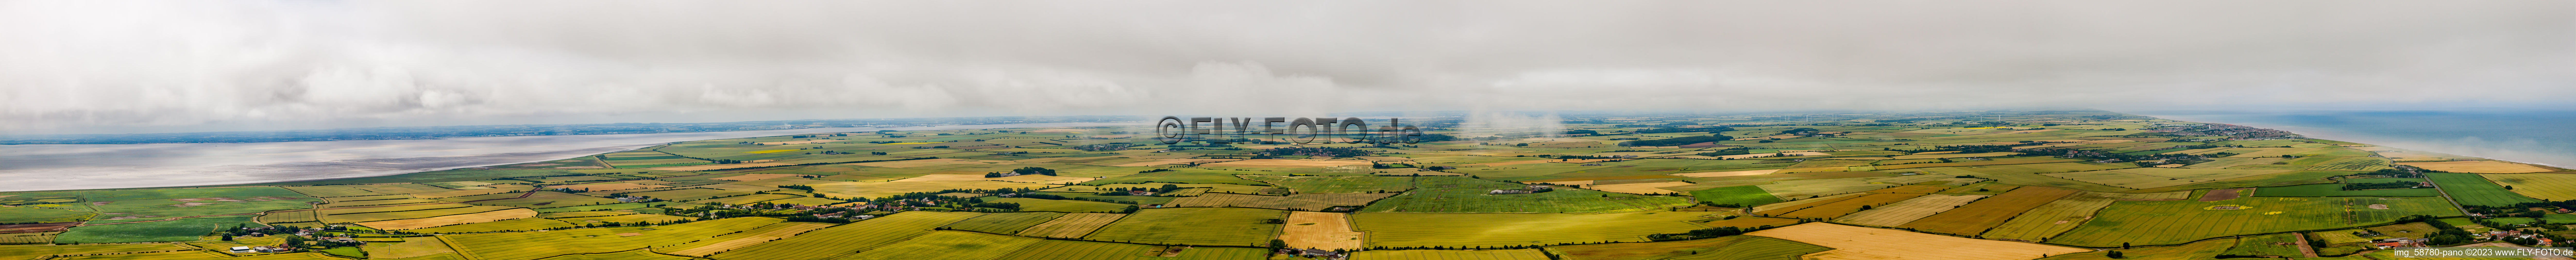 Vue aérienne de Panorama de la côte patrimoniale du Rejet à Holmpton dans le département Angleterre, Grande Bretagne